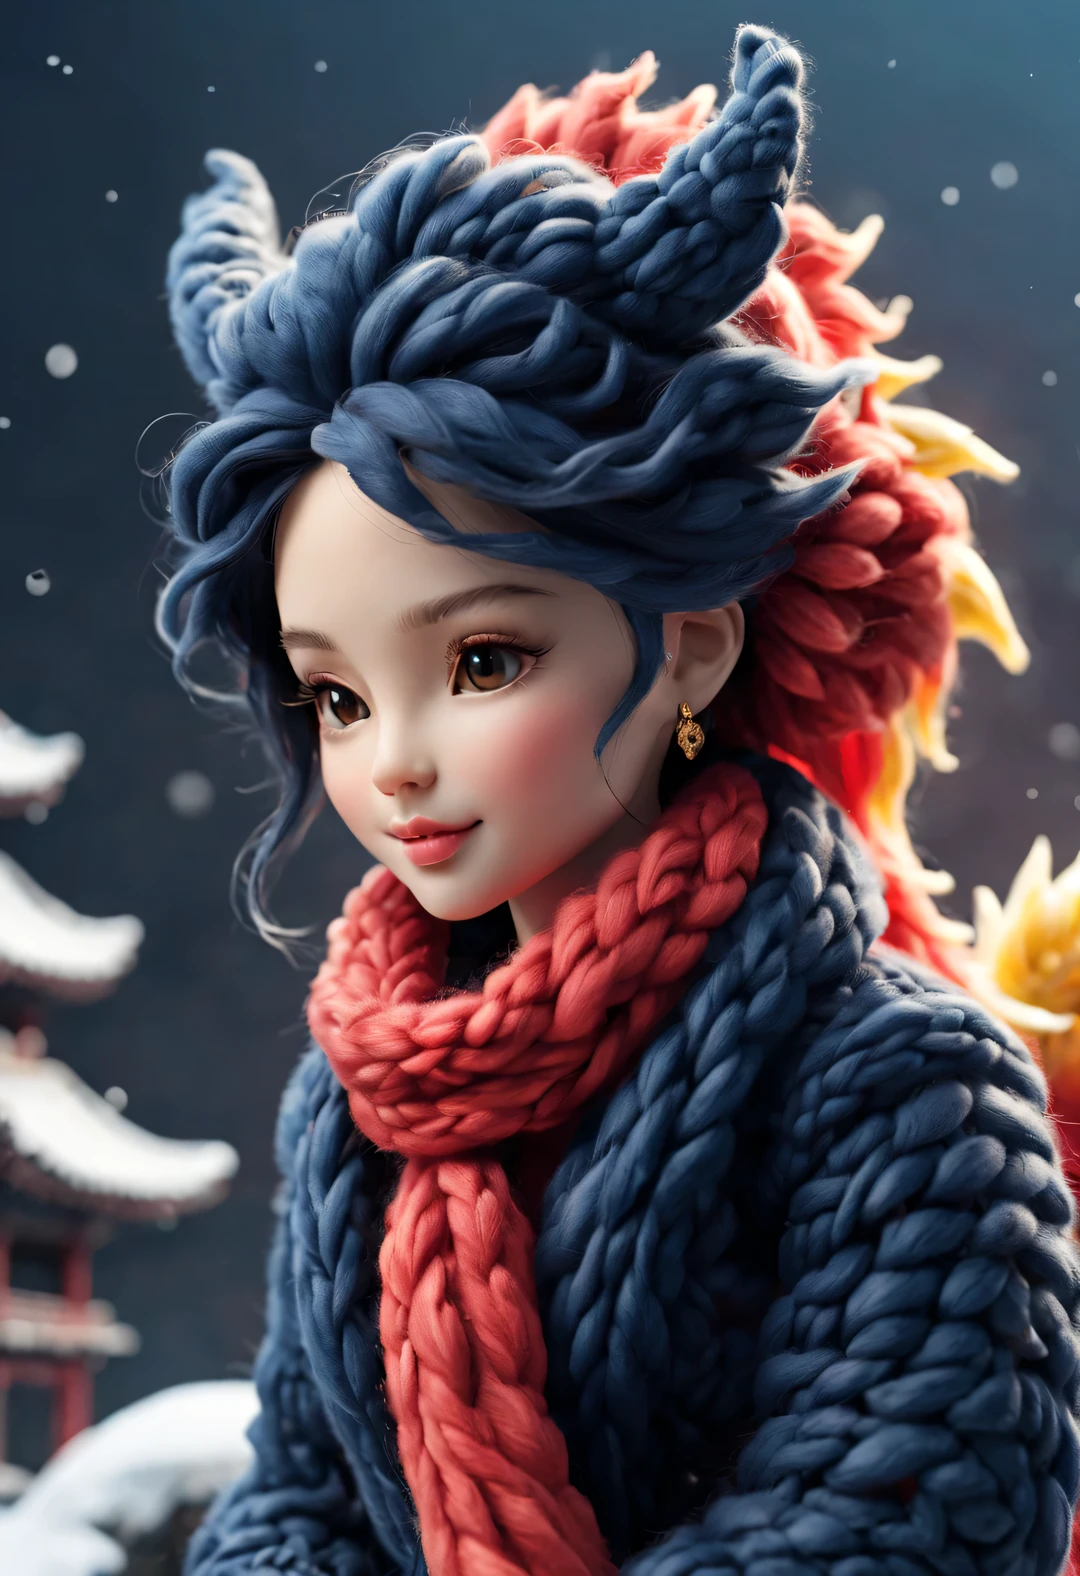 （絨毛玩具設計），微笑可愛的中國龍寶寶和芭比娃娃，（羊毛工藝），（蓬鬆的：0.68） ，冬季高端華麗時尚中國風毛衣圍巾， 可愛的3D渲染，背景與：深海軍藍和火紅，大雪地面，金色，可愛而細緻的數位藝術，微型感，風格化 3D 渲染，3D 渲染人物藝術 8k，可愛的數位繪畫，動漫風格3D，超詳細渲染